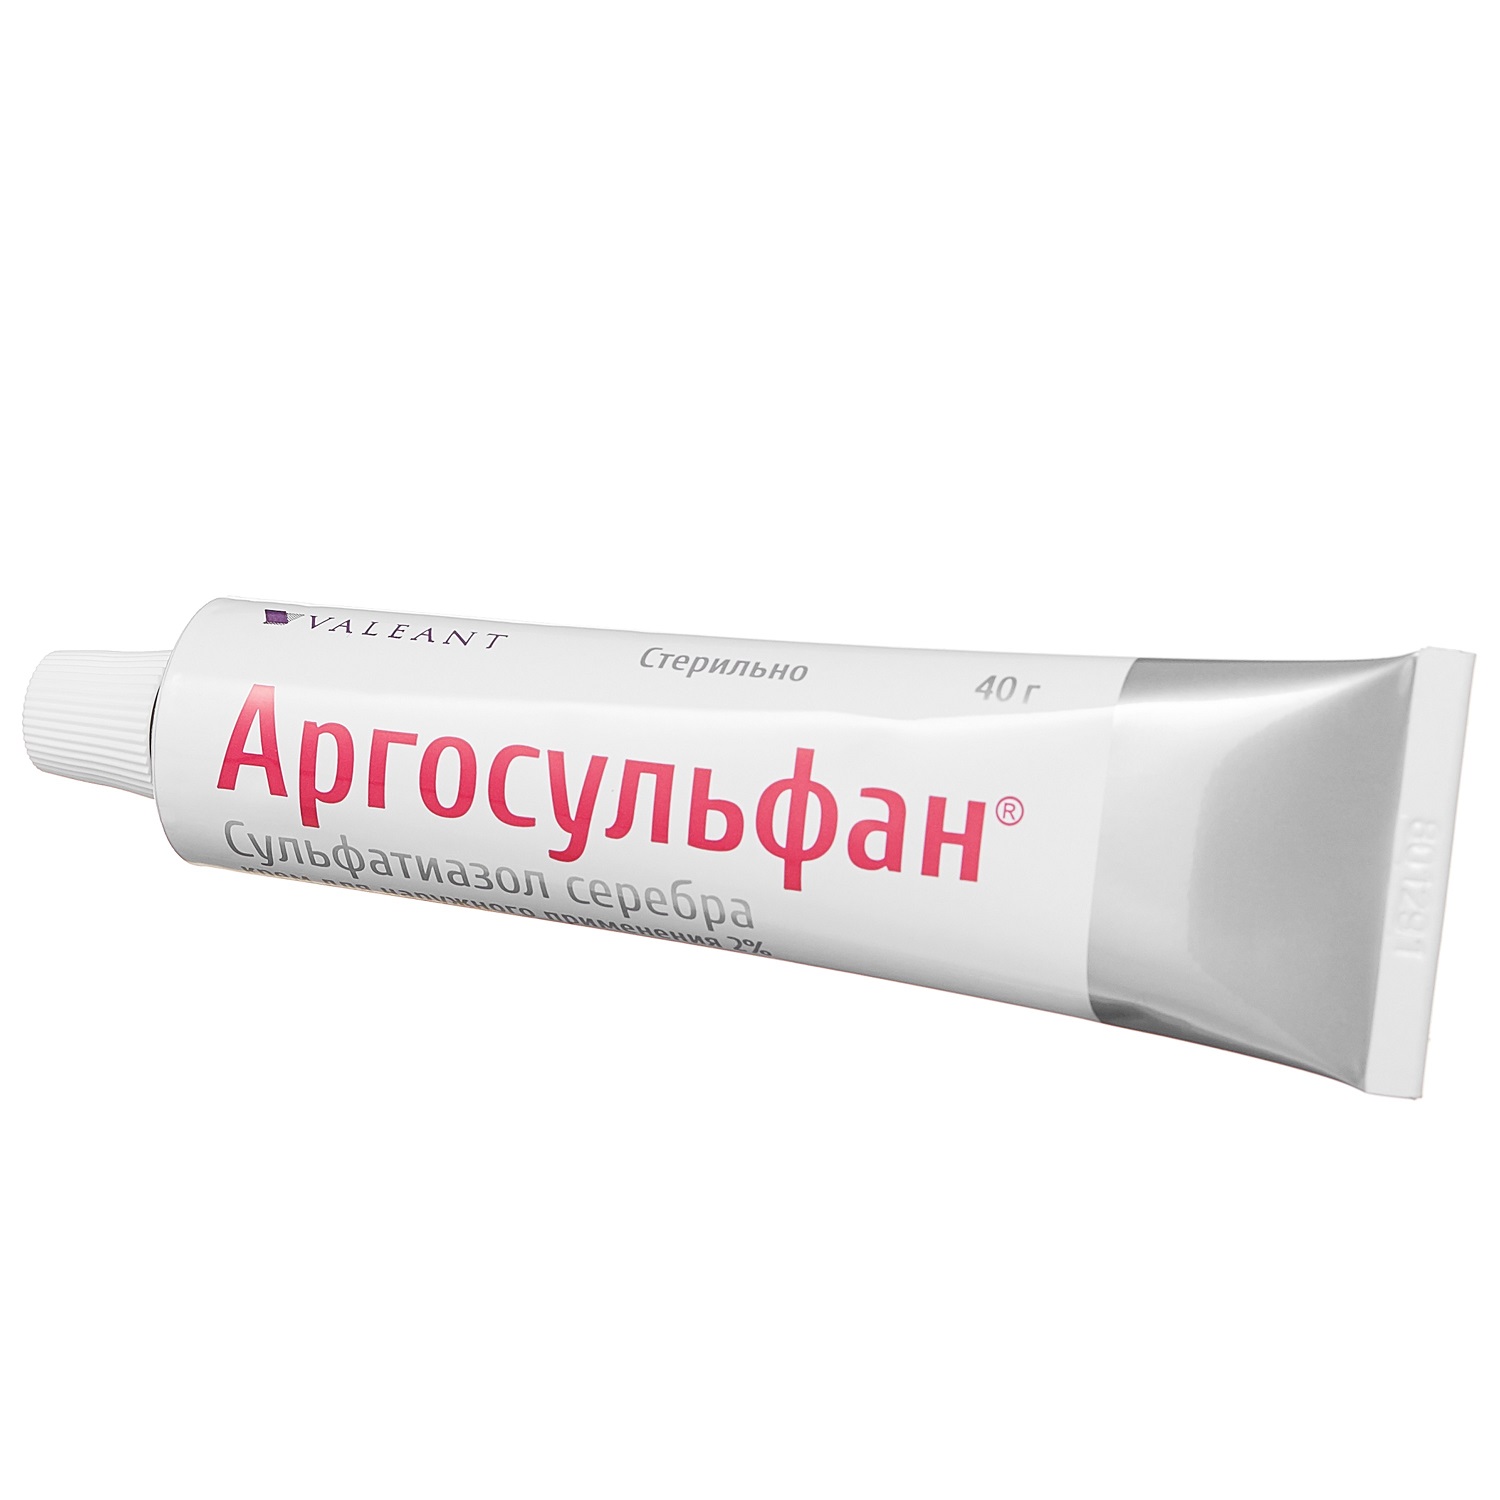 Аргосульфан крем 2% 40г аргосульфан крем для наружного применения 2% 40г